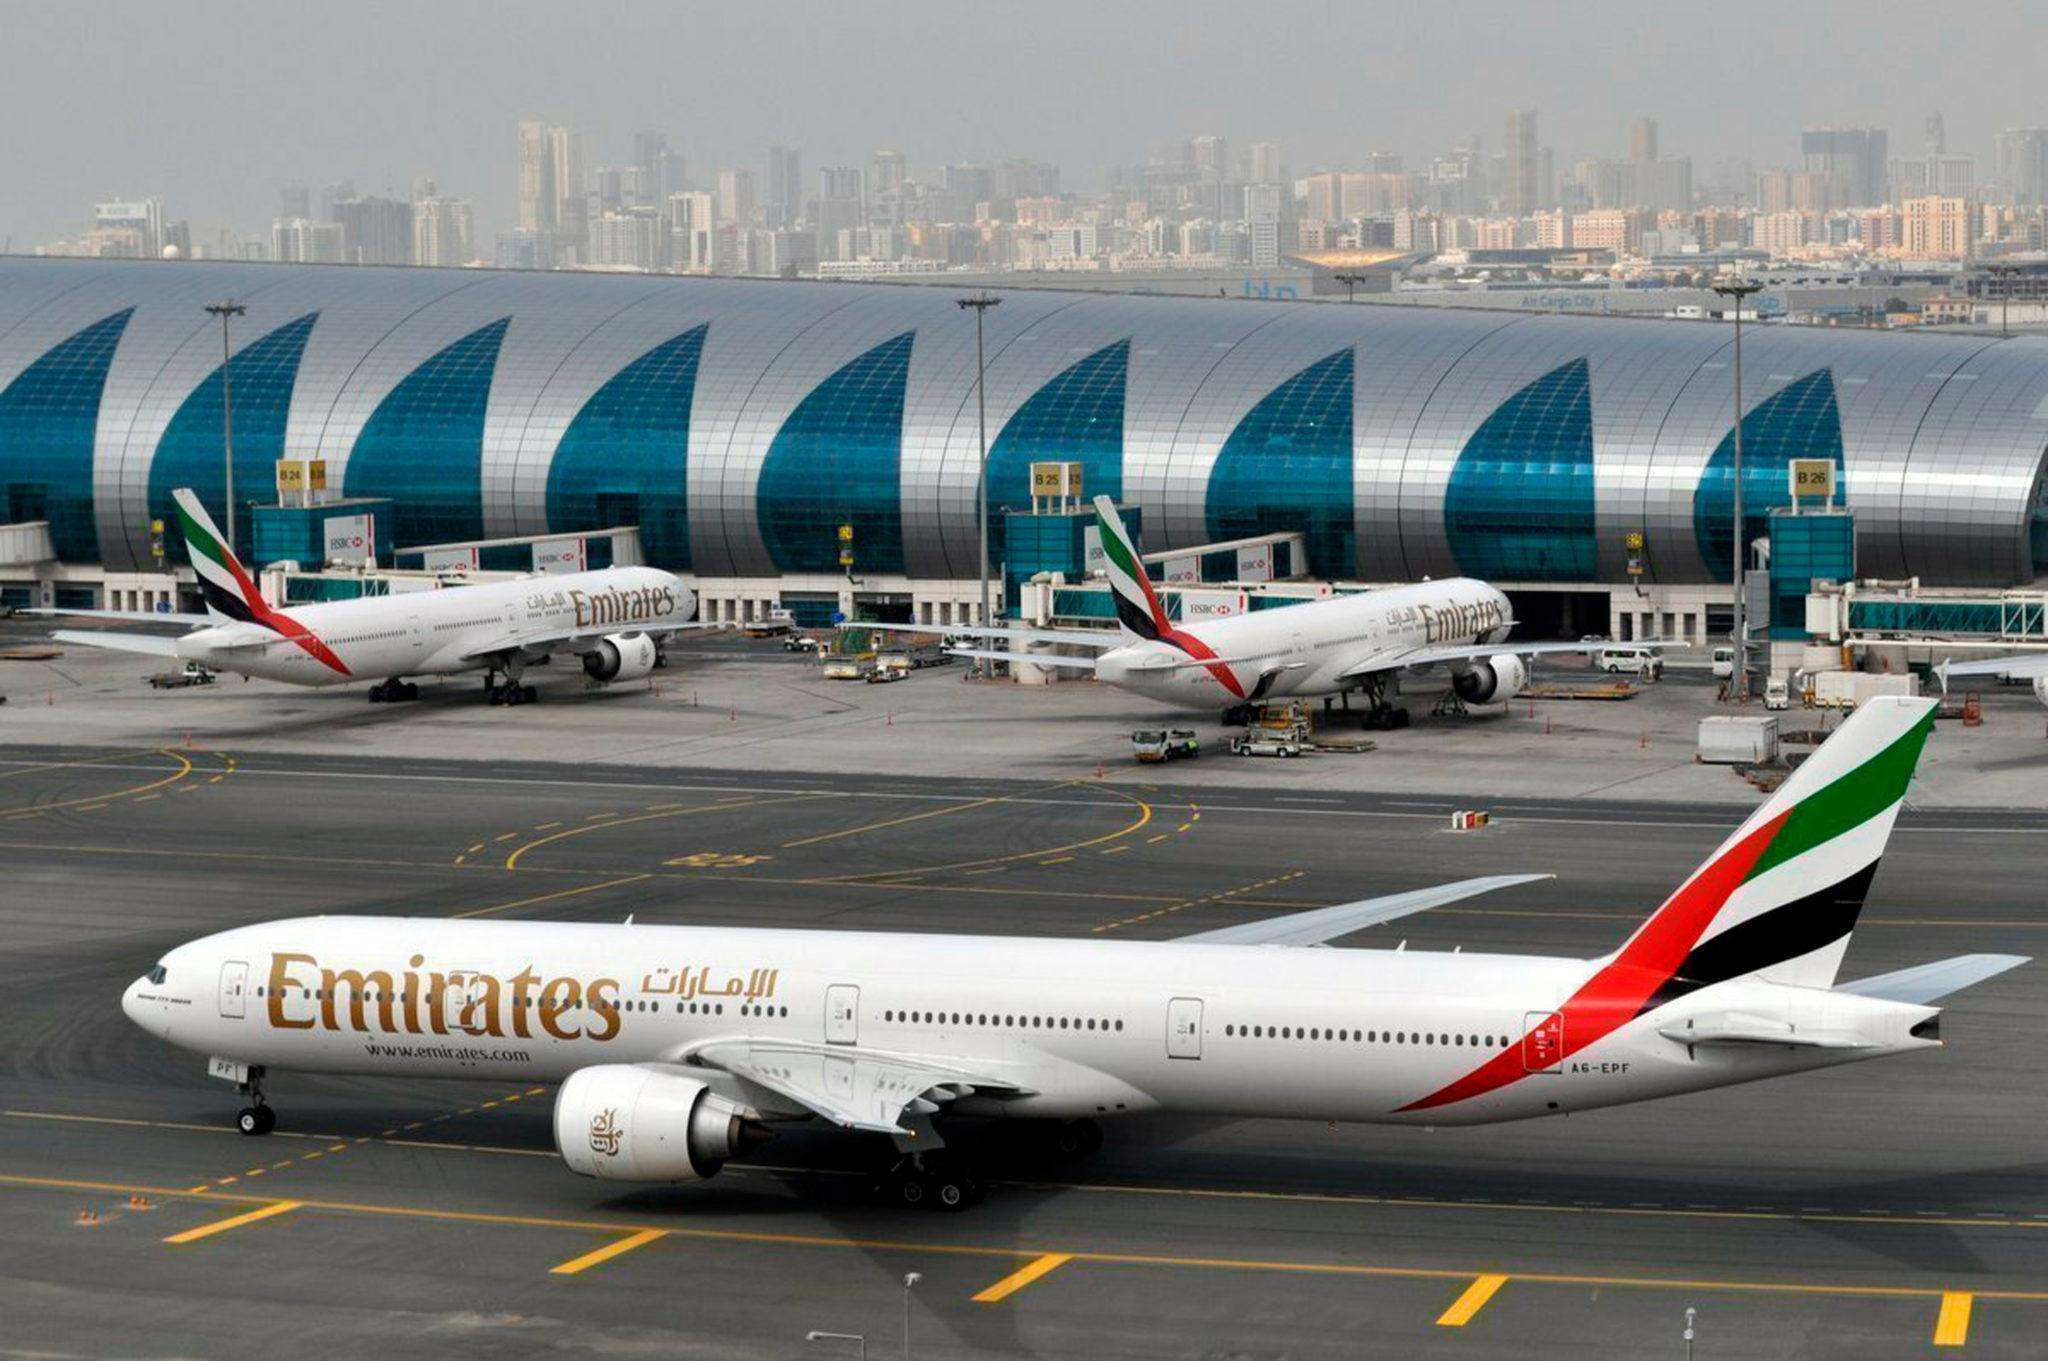 दुबई के लिए फ्लाइट बुकिंग पर विशेष हवाई किराए की व्यवस्था की गई है